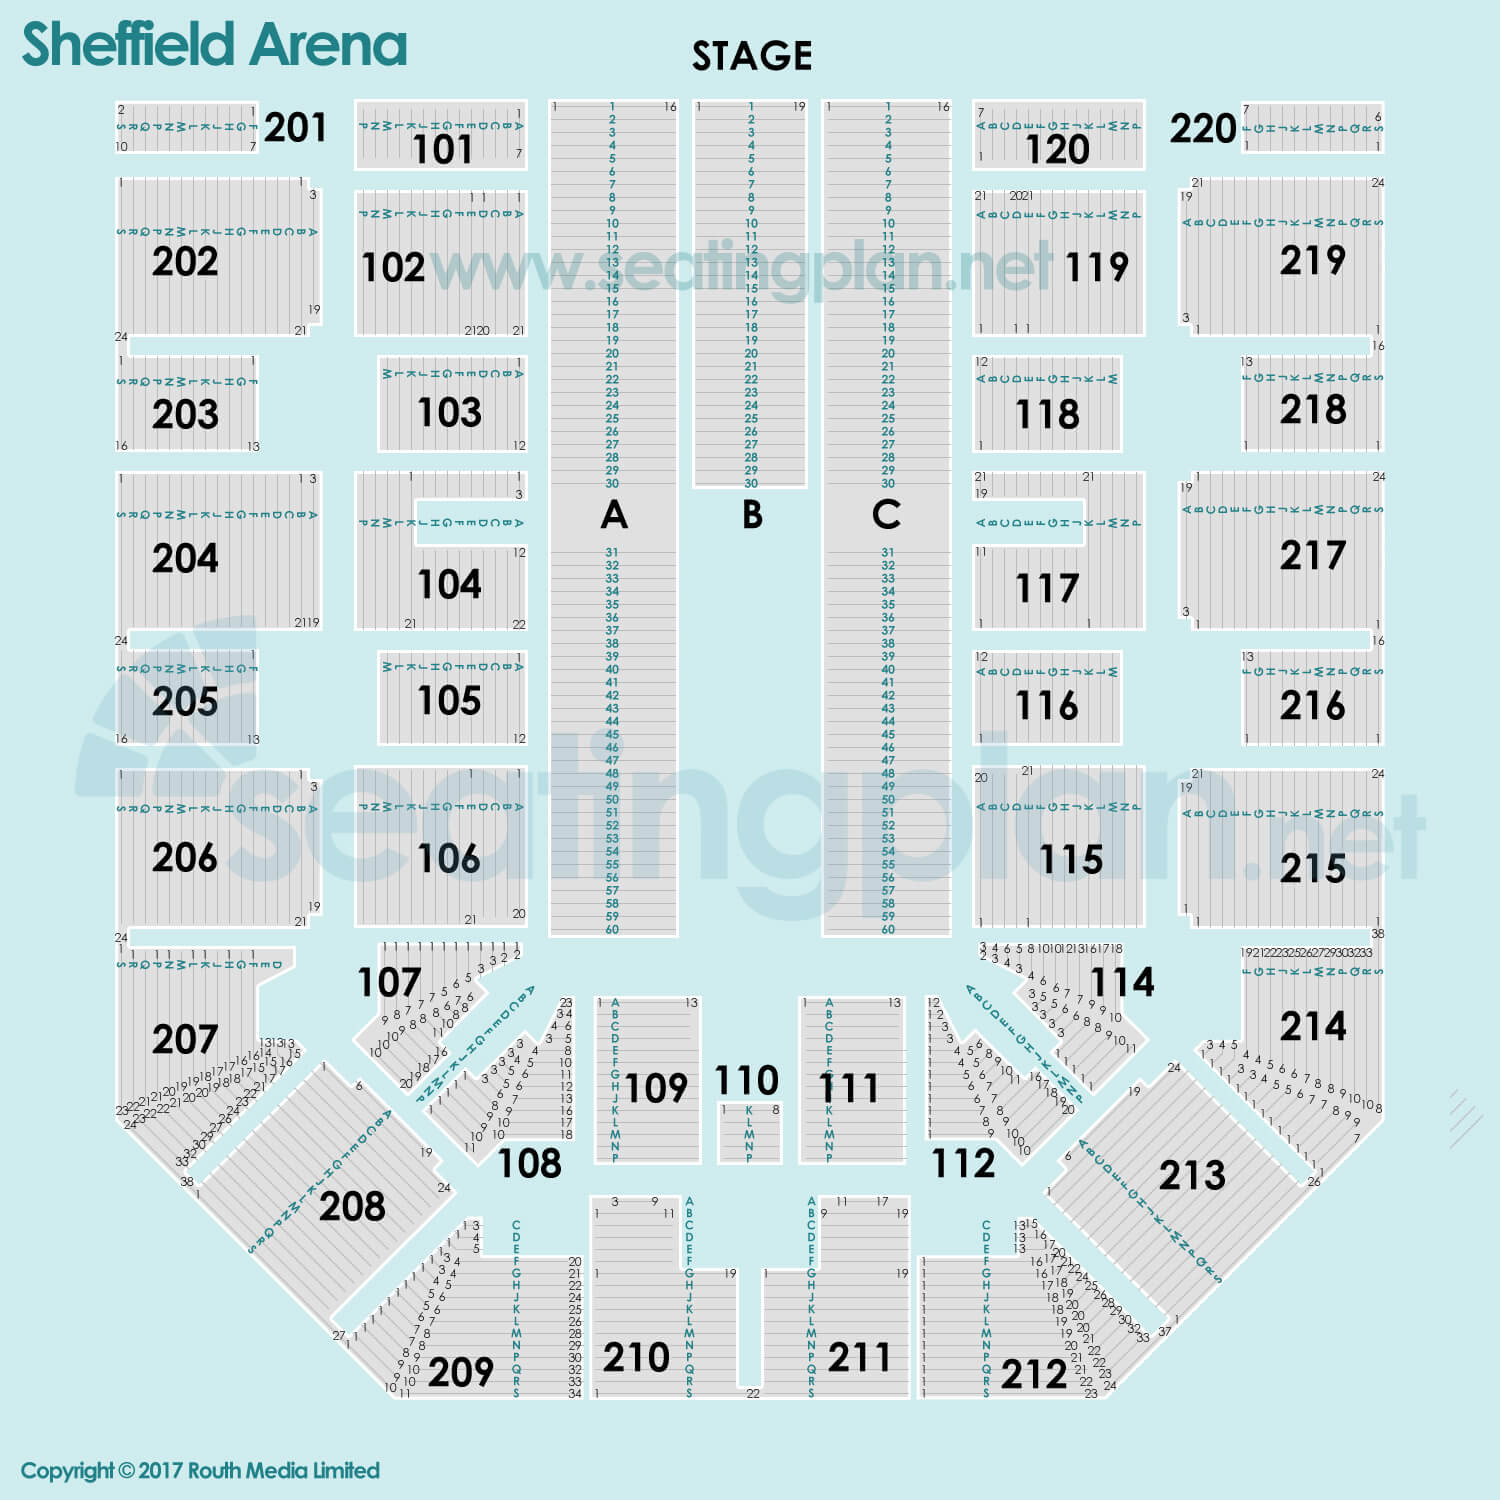 detailed Seating Plan at Utilita Arena Sheffield